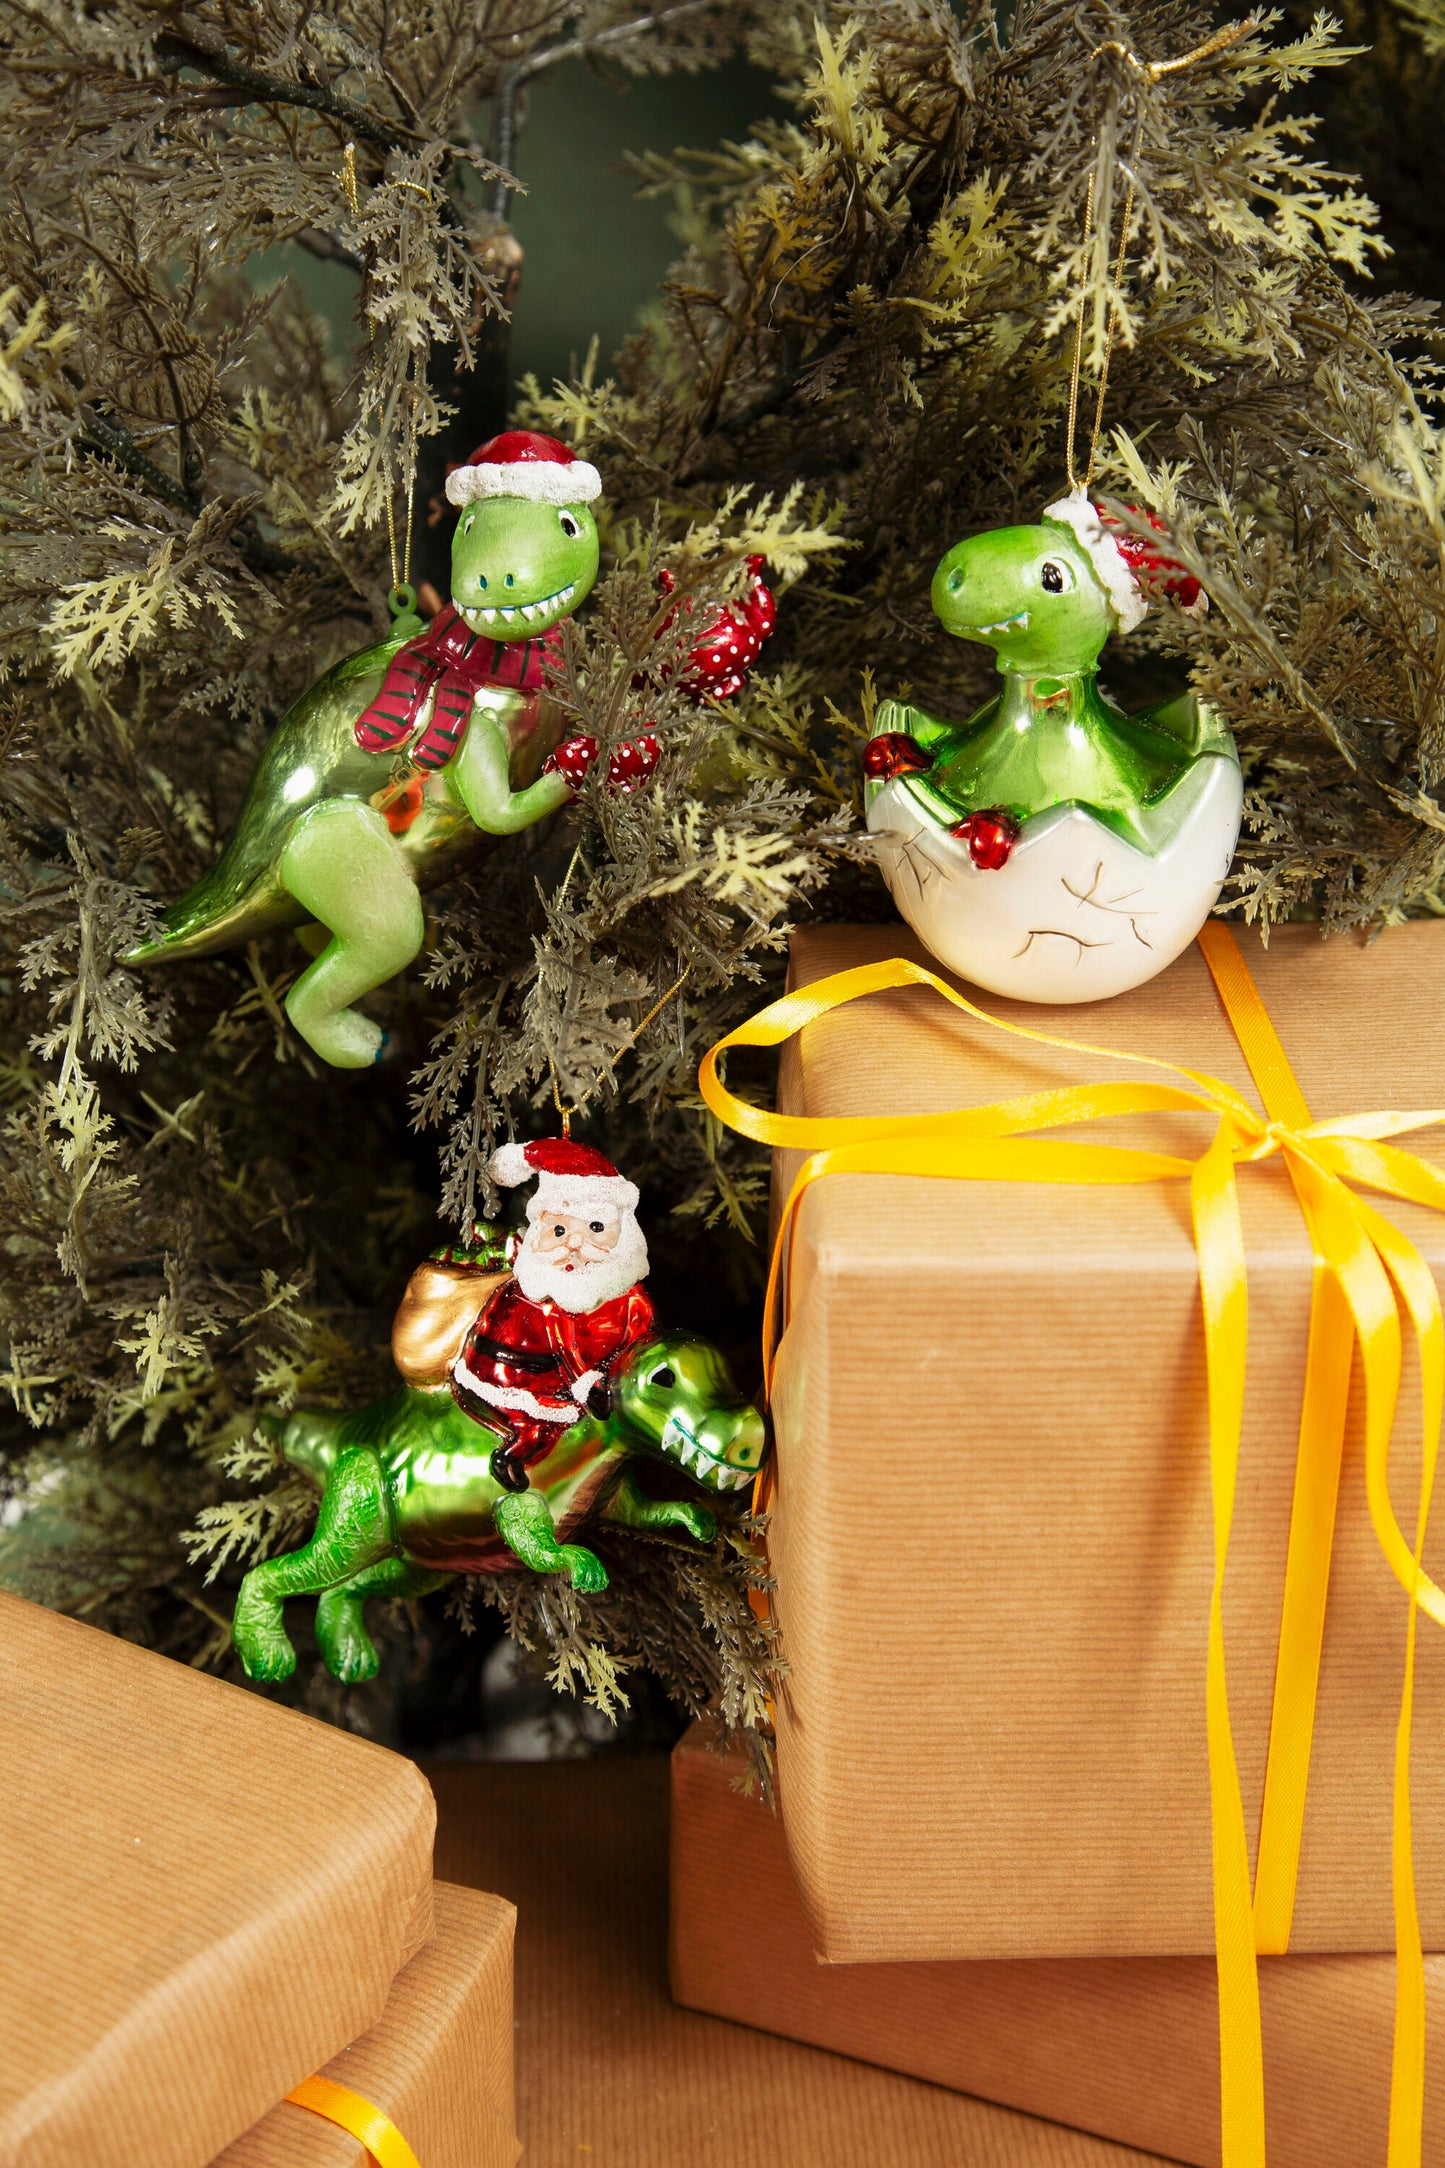 Dinosaur and Santa Shaped Christmas Tree Decoration - ad&i